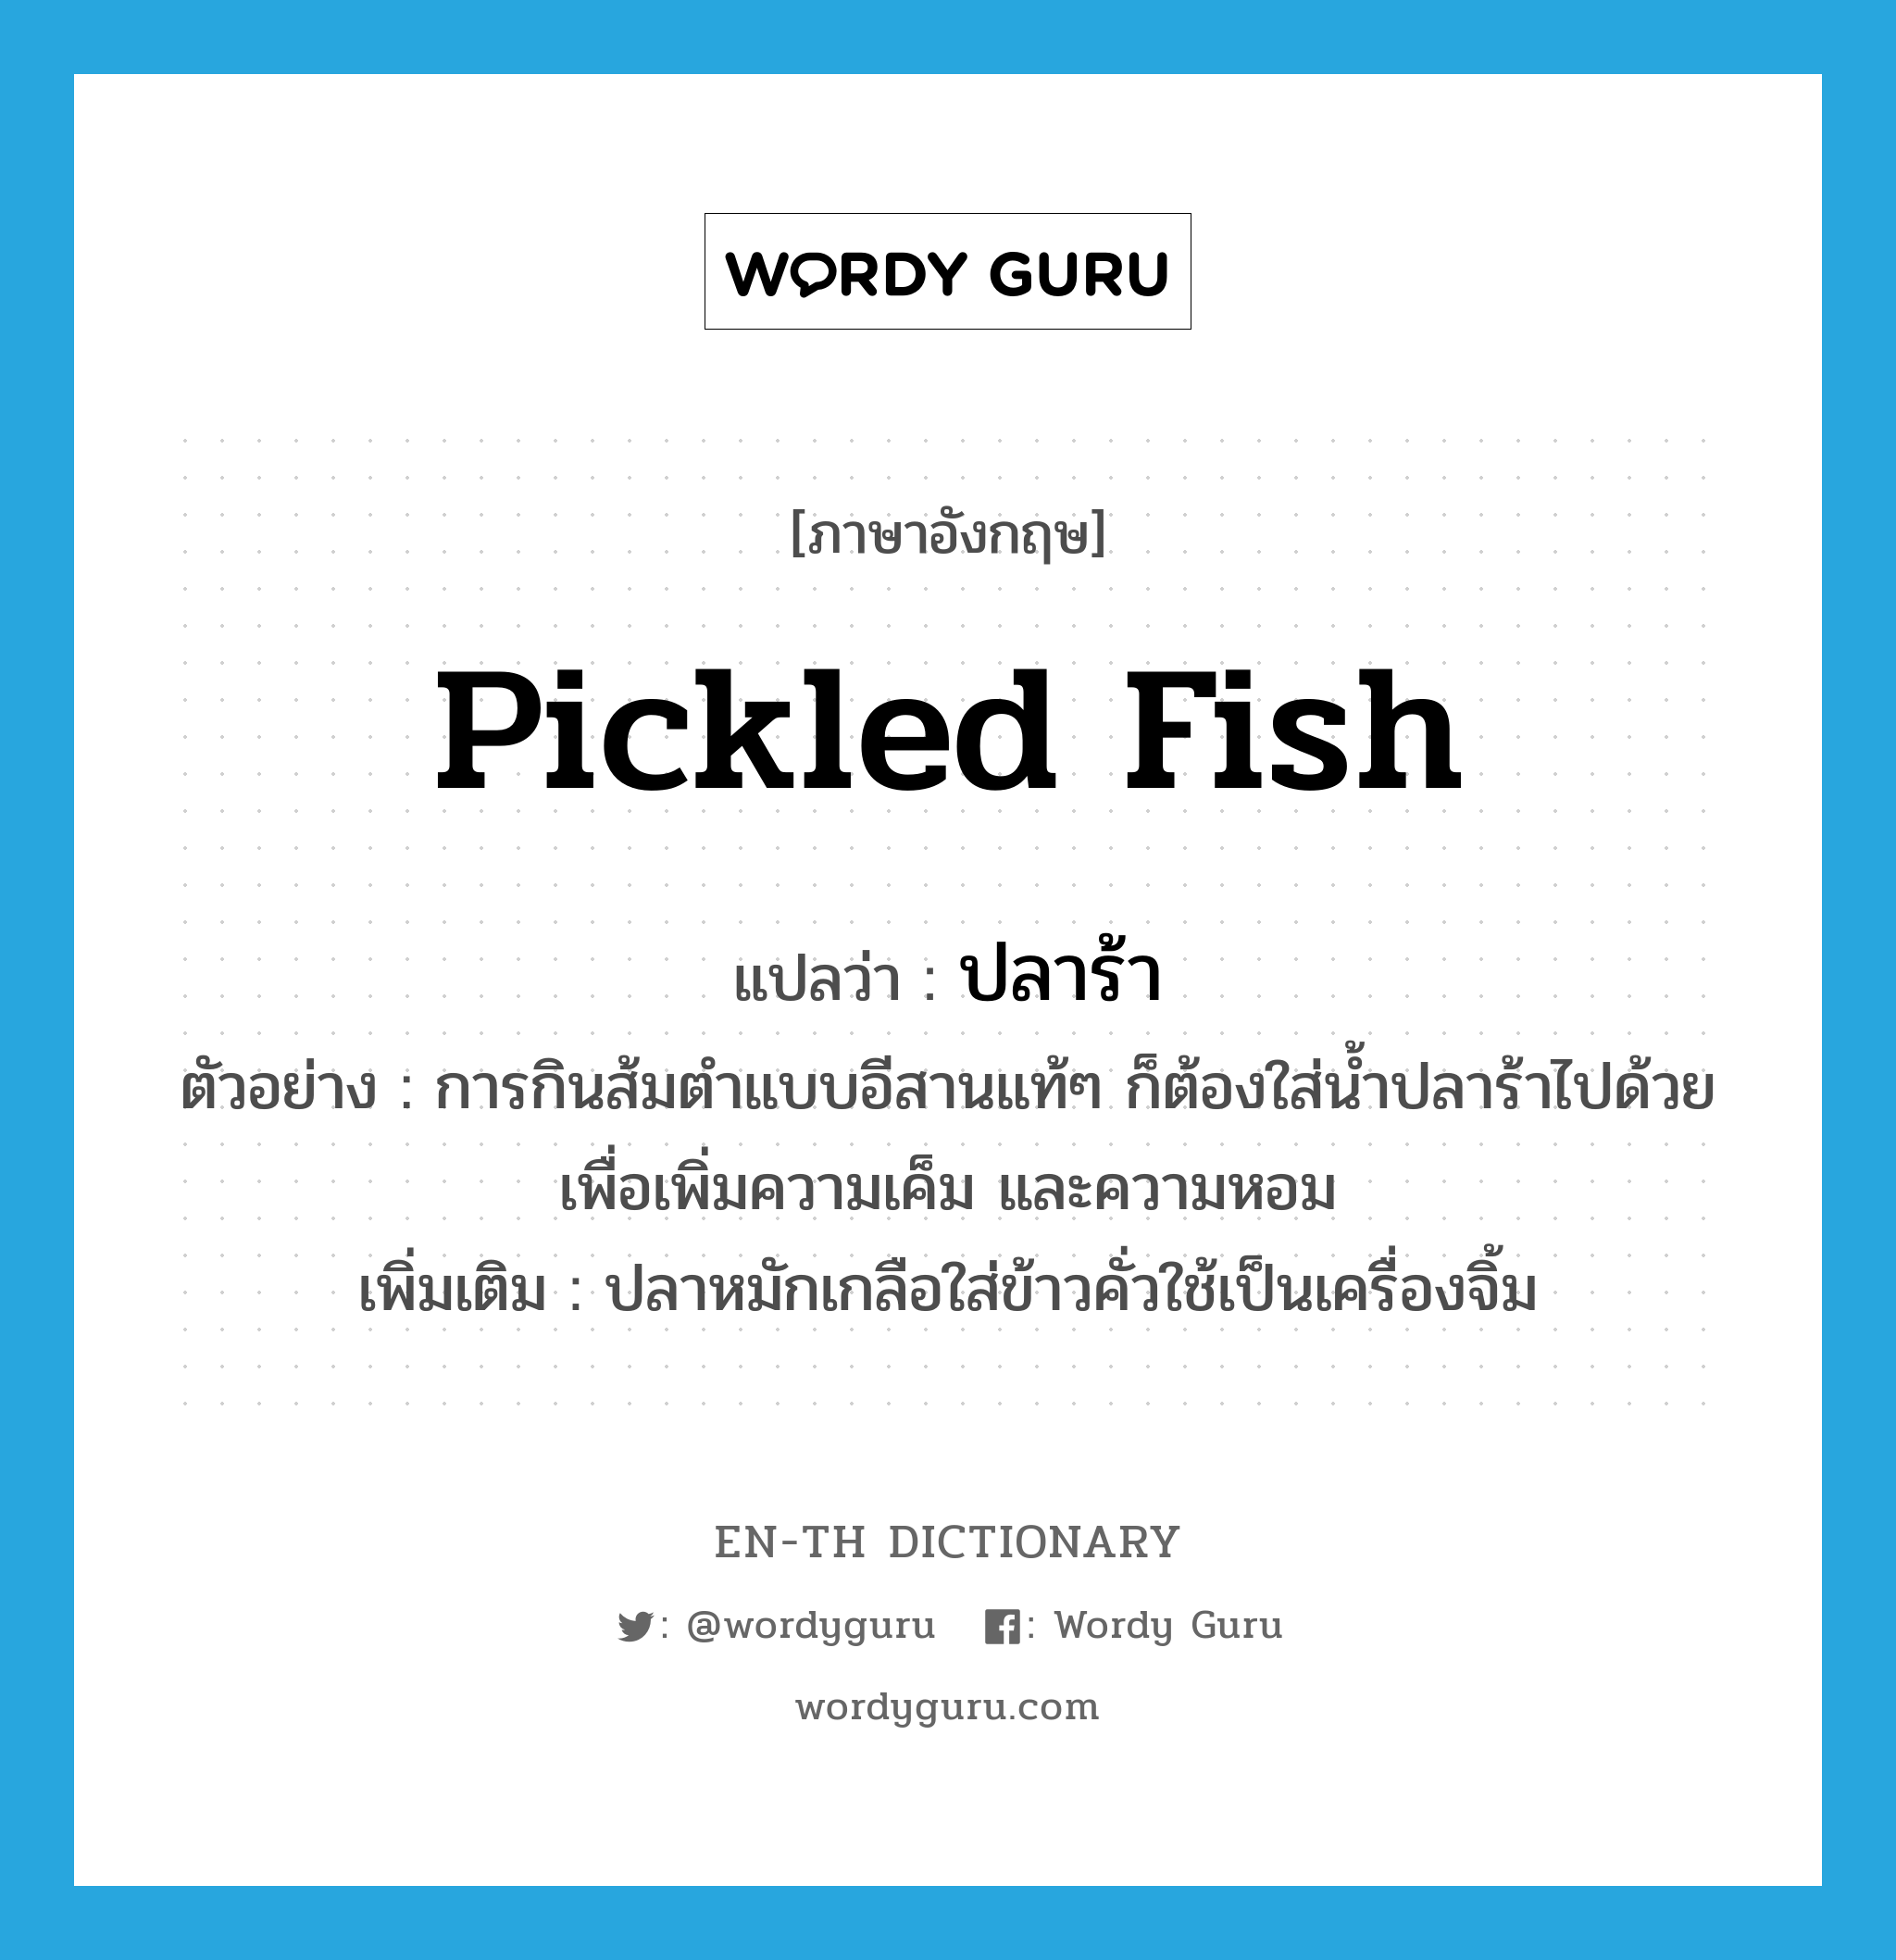 pickled fish แปลว่า?, คำศัพท์ภาษาอังกฤษ pickled fish แปลว่า ปลาร้า ประเภท N ตัวอย่าง การกินส้มตำแบบอีสานแท้ๆ ก็ต้องใส่น้ำปลาร้าไปด้วยเพื่อเพิ่มความเค็ม และความหอม เพิ่มเติม ปลาหมักเกลือใส่ข้าวคั่วใช้เป็นเครื่องจิ้ม หมวด N